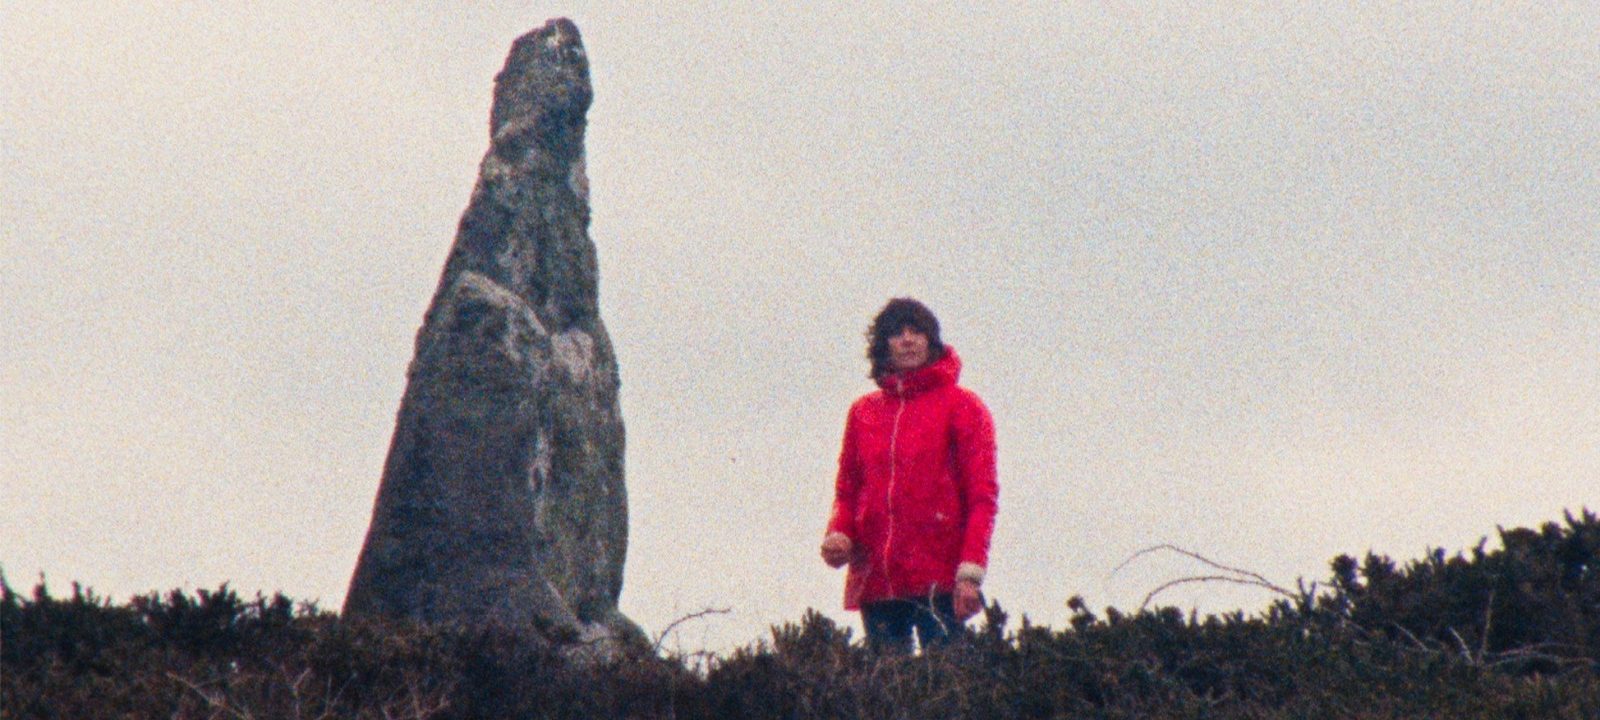 Рецензия на фильм «Каменный остров» — визуально безупречный хоррор о  британской глубинке